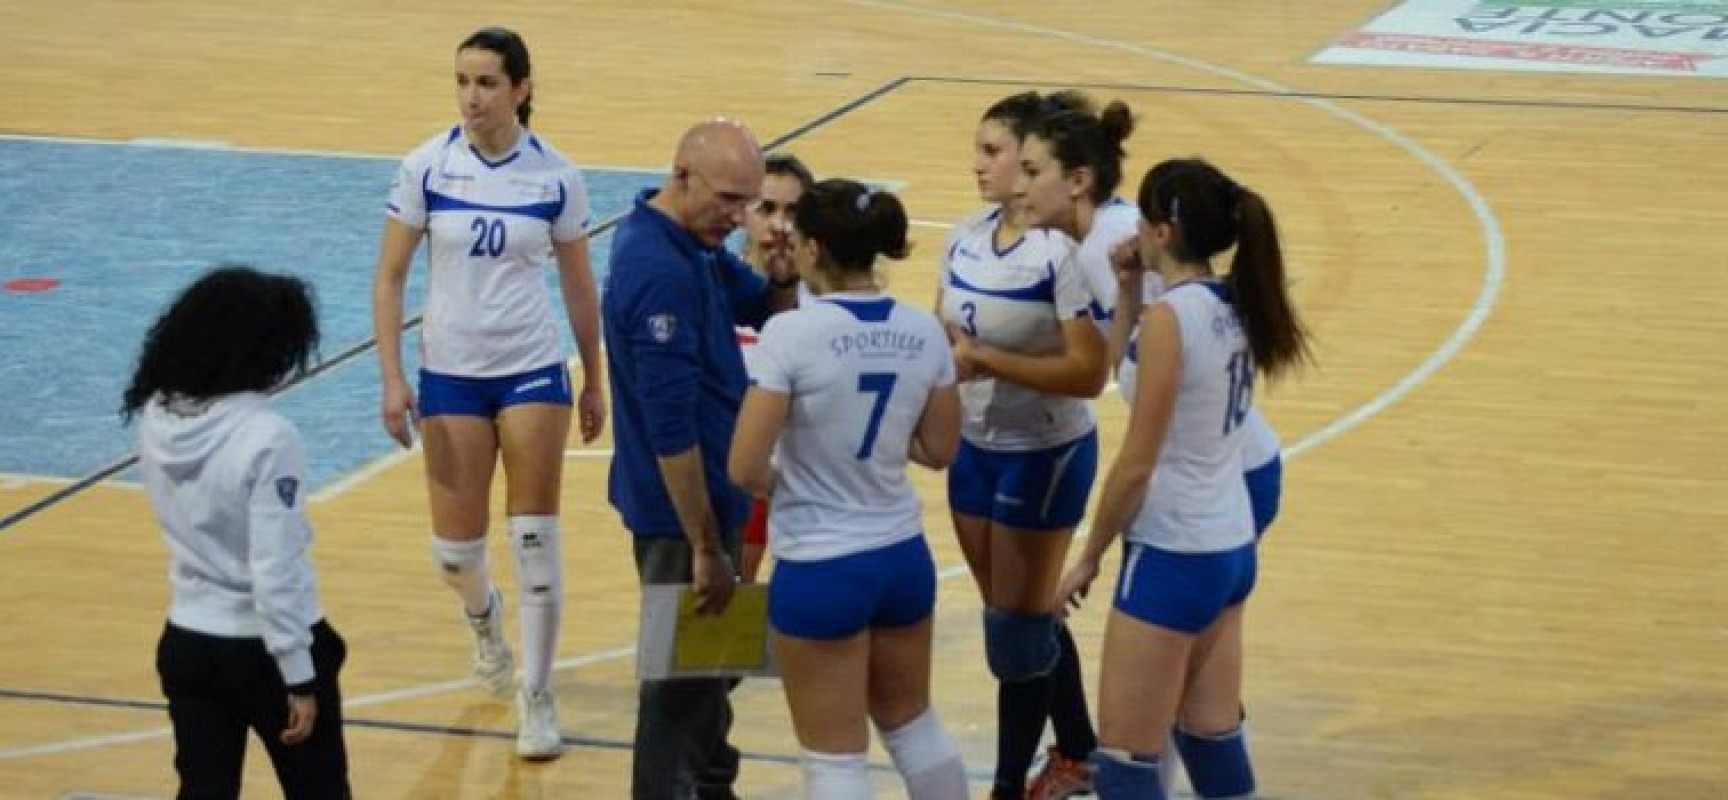 Sportilia lotta ma non basta, il Pharma Volley Triggiano vince 3-1 al Paladolmen